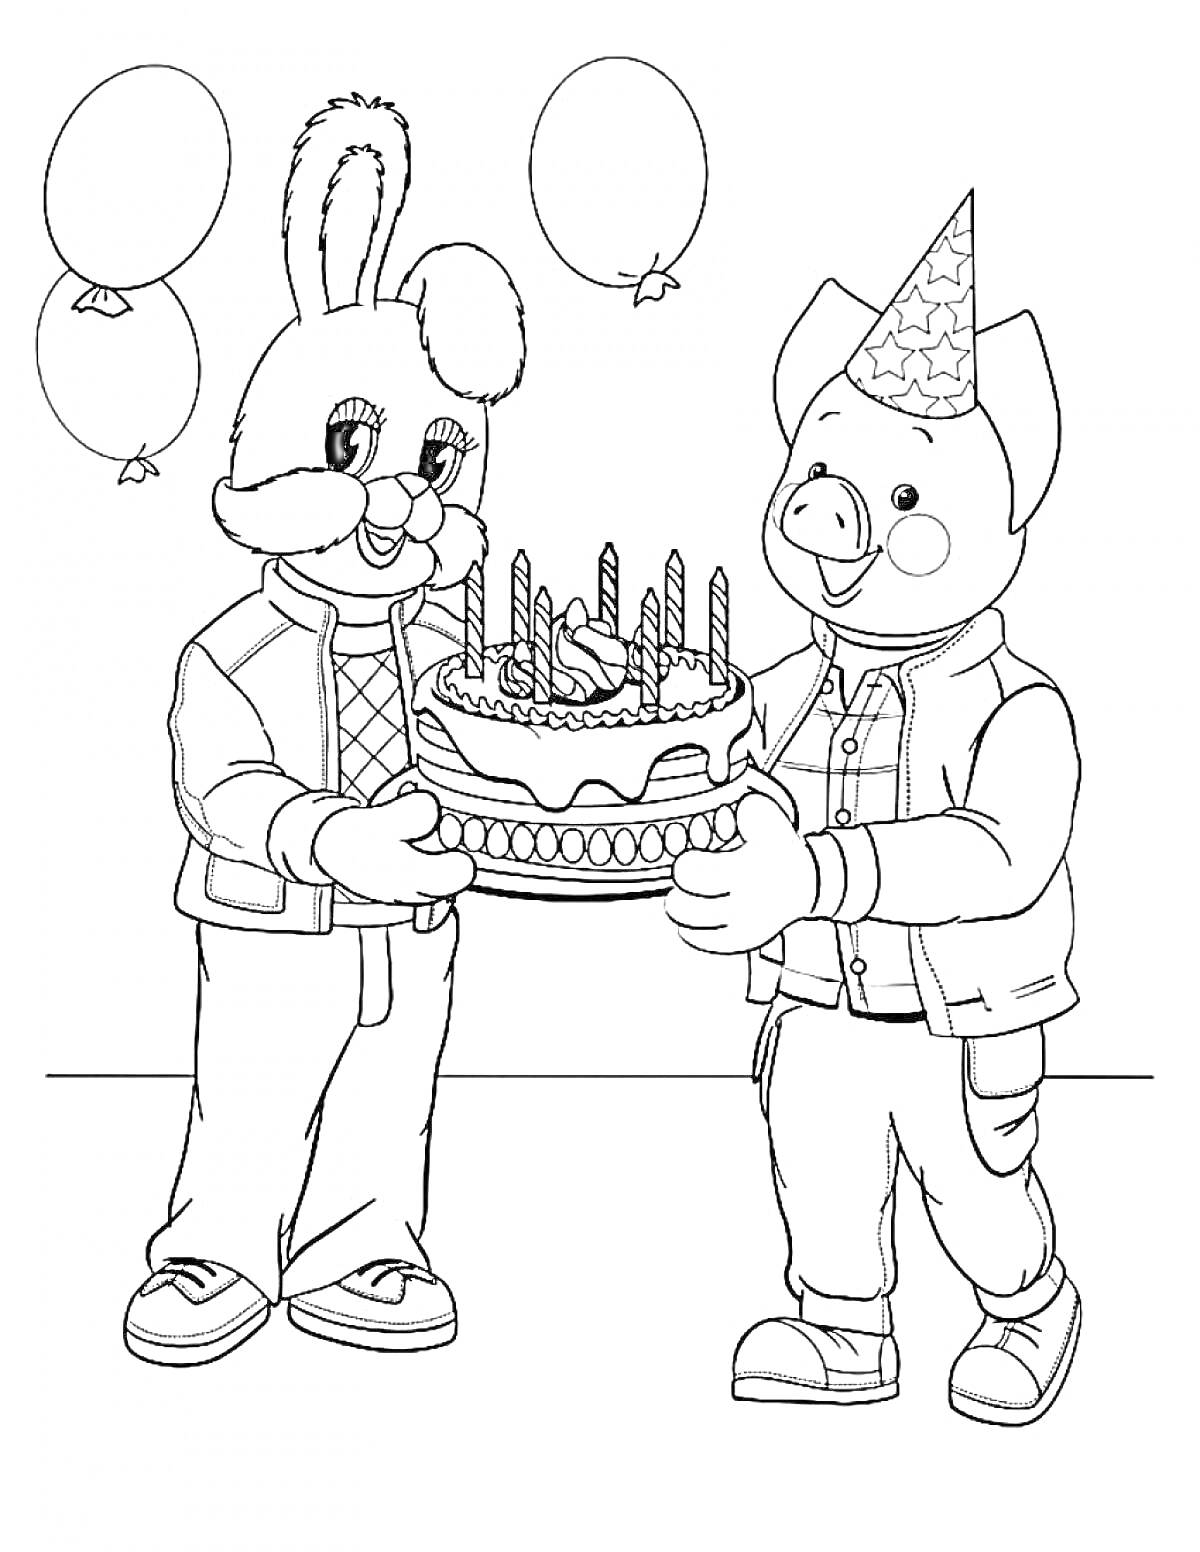 Зайчик и поросенок празднуют день рождения с тортом